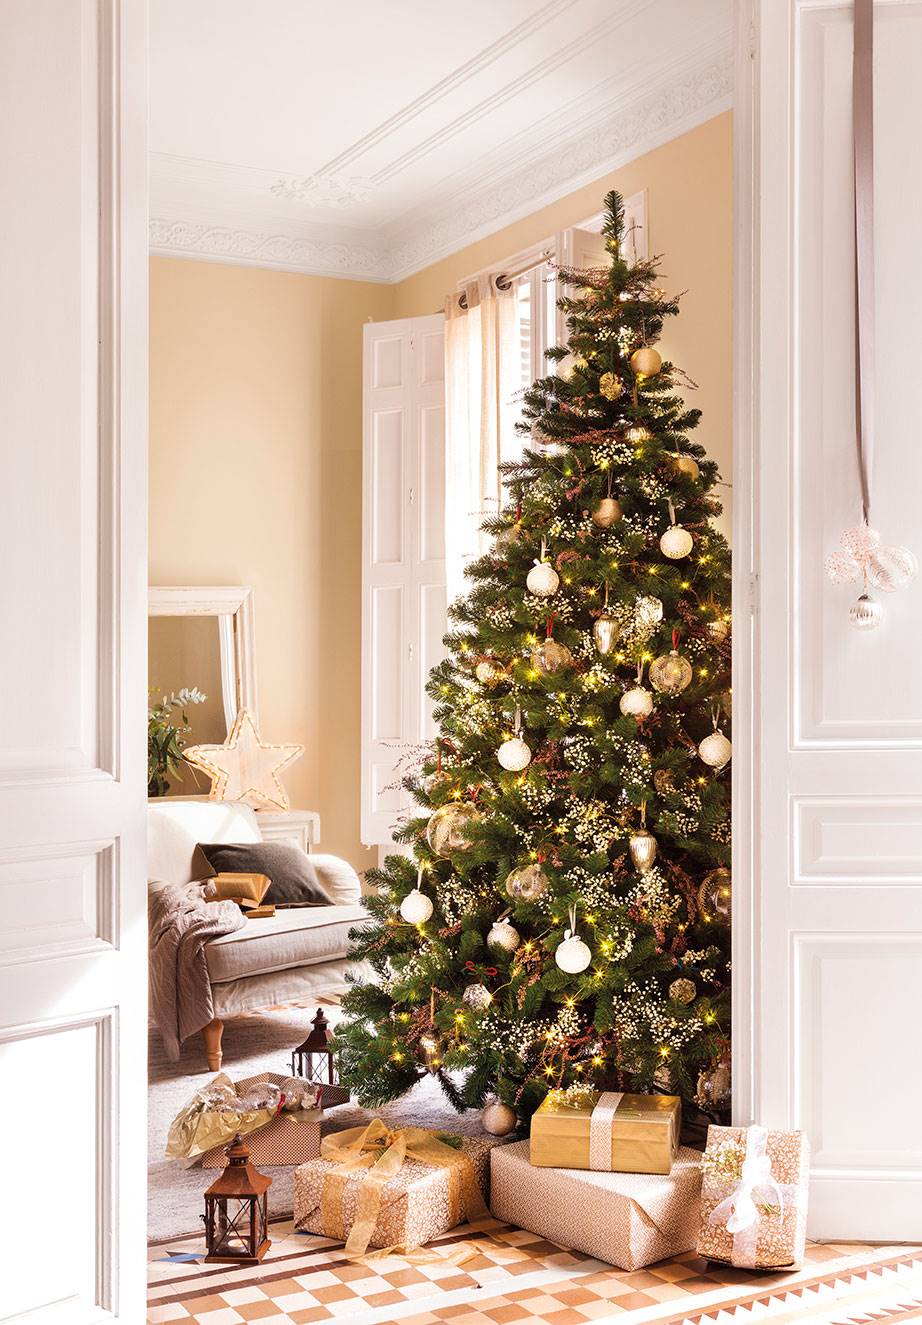 Salón con árbol de Navidad con regalos y puerta blanca con adornos colgados.